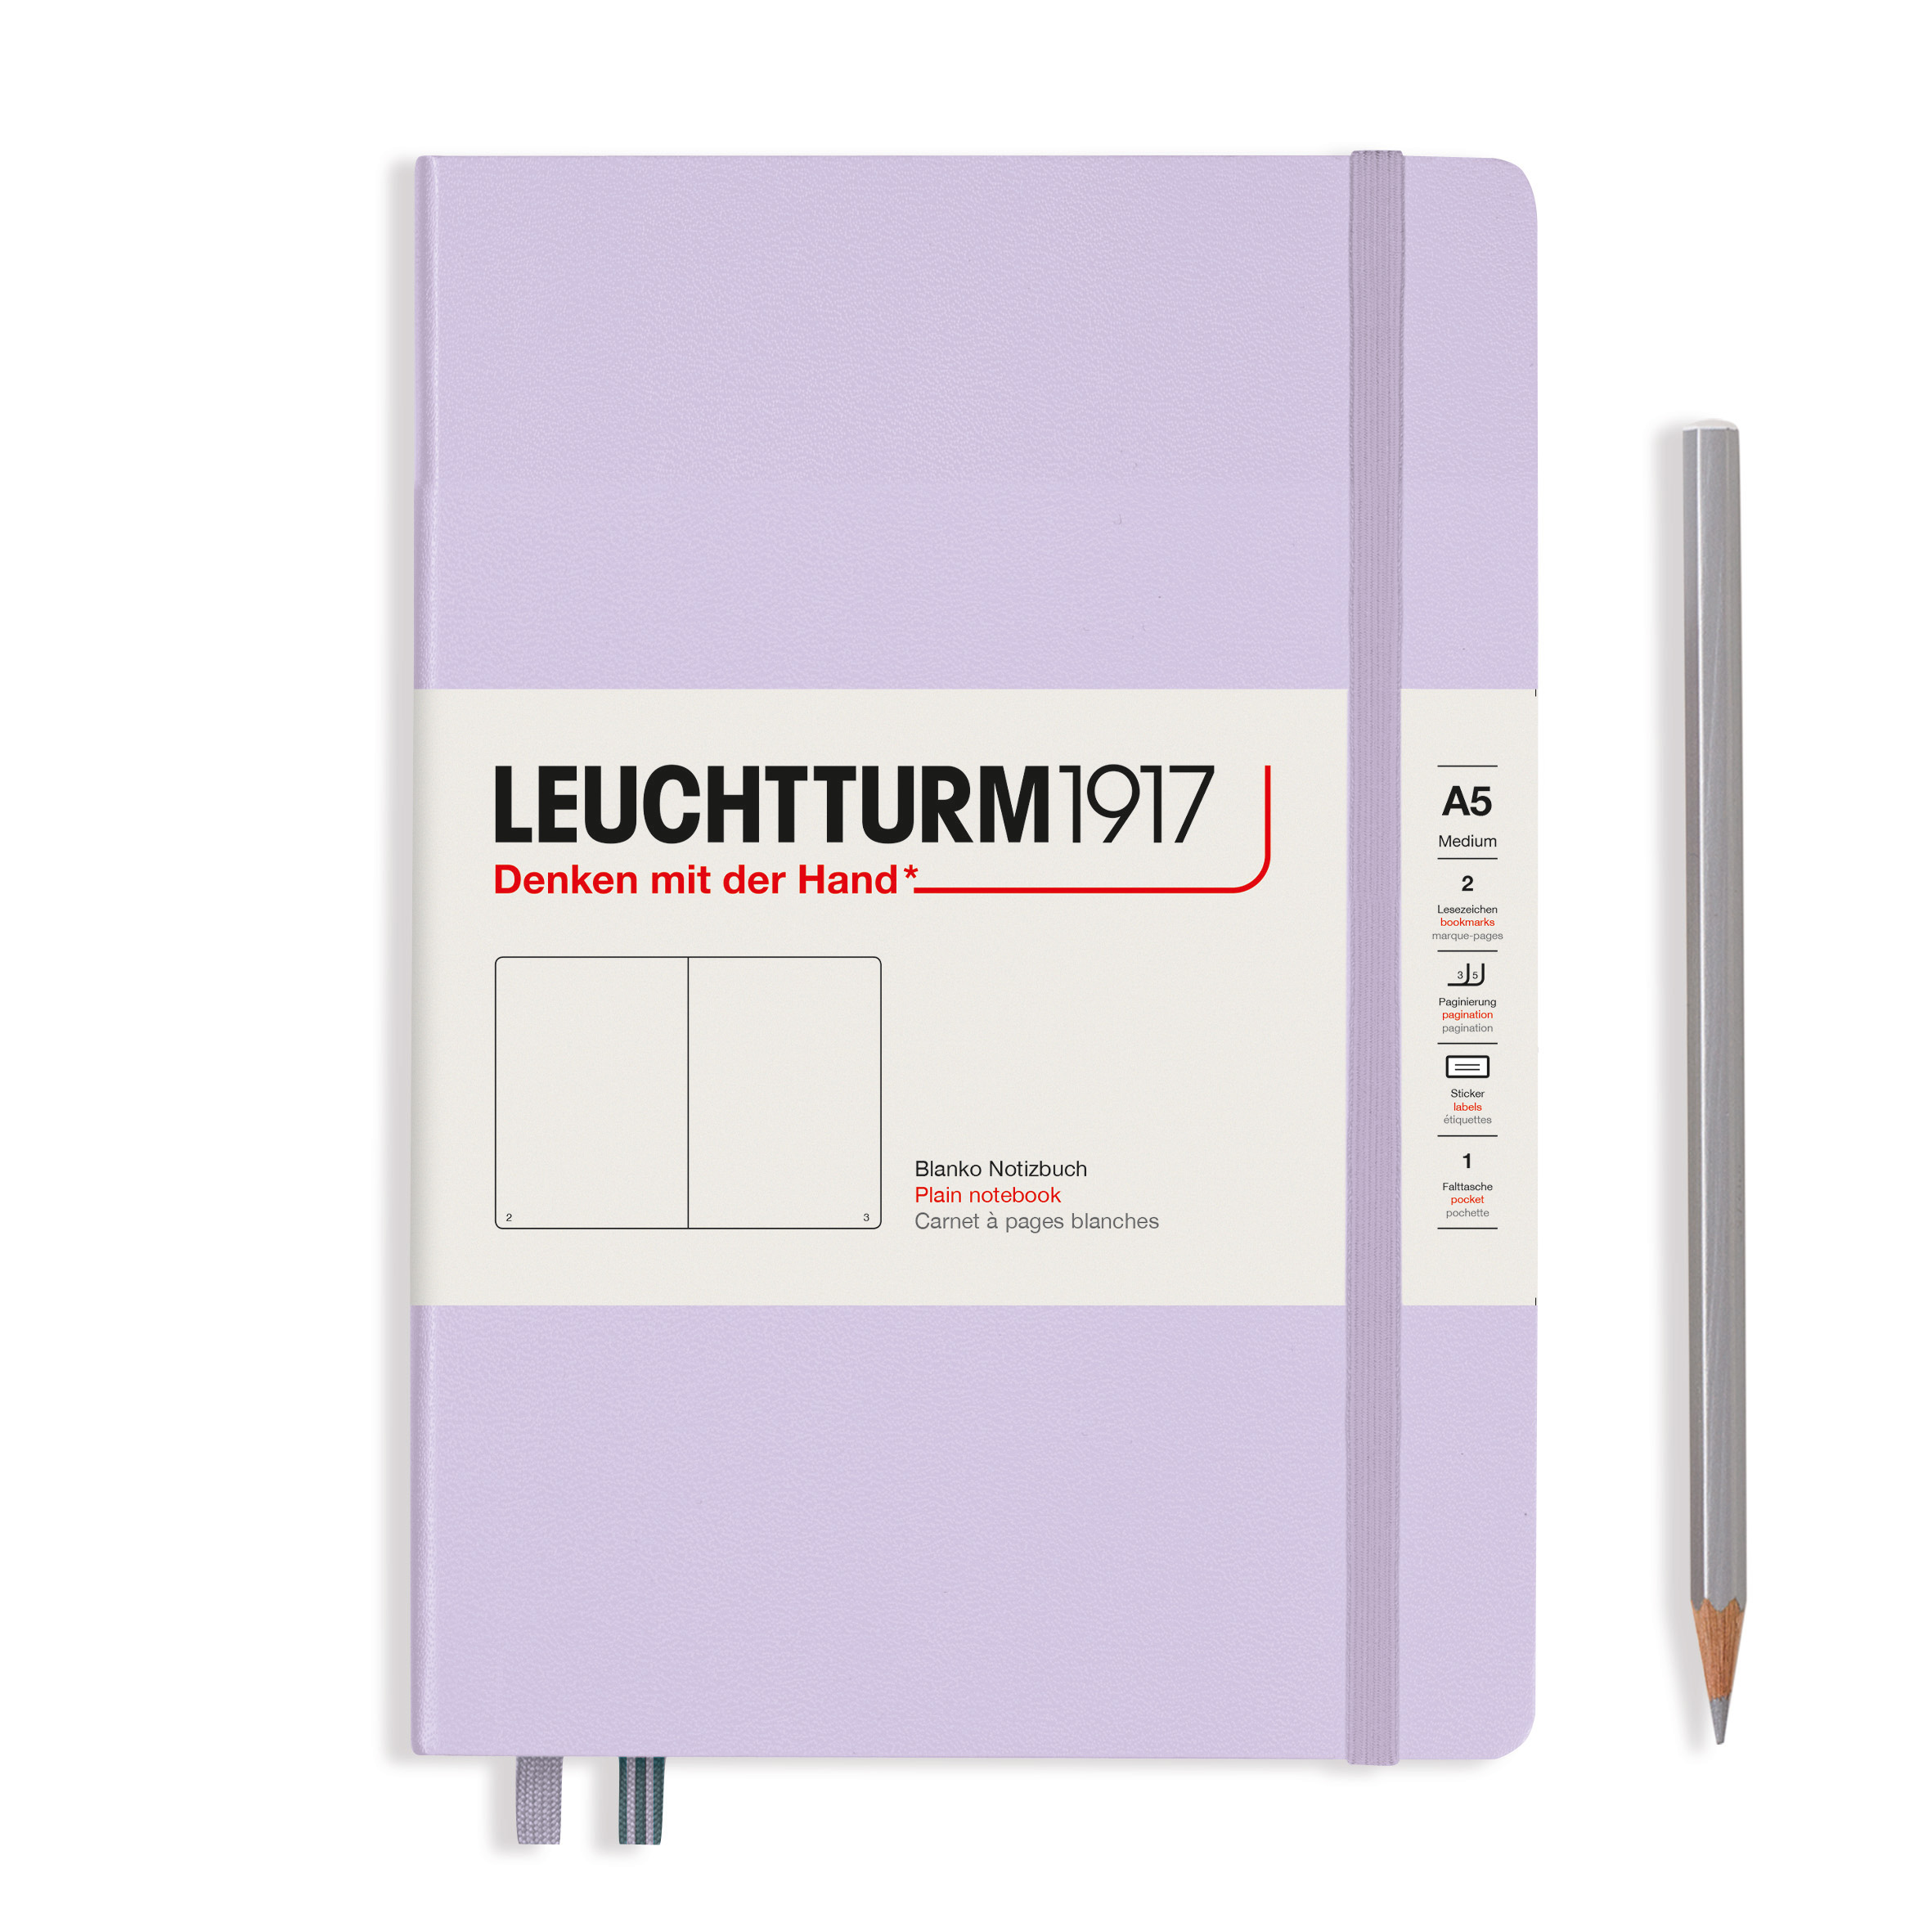 Compatibel met biologie succes Leuchtturm1917 A5 Medium Notitieboek blanco Lilac - De Groen BV